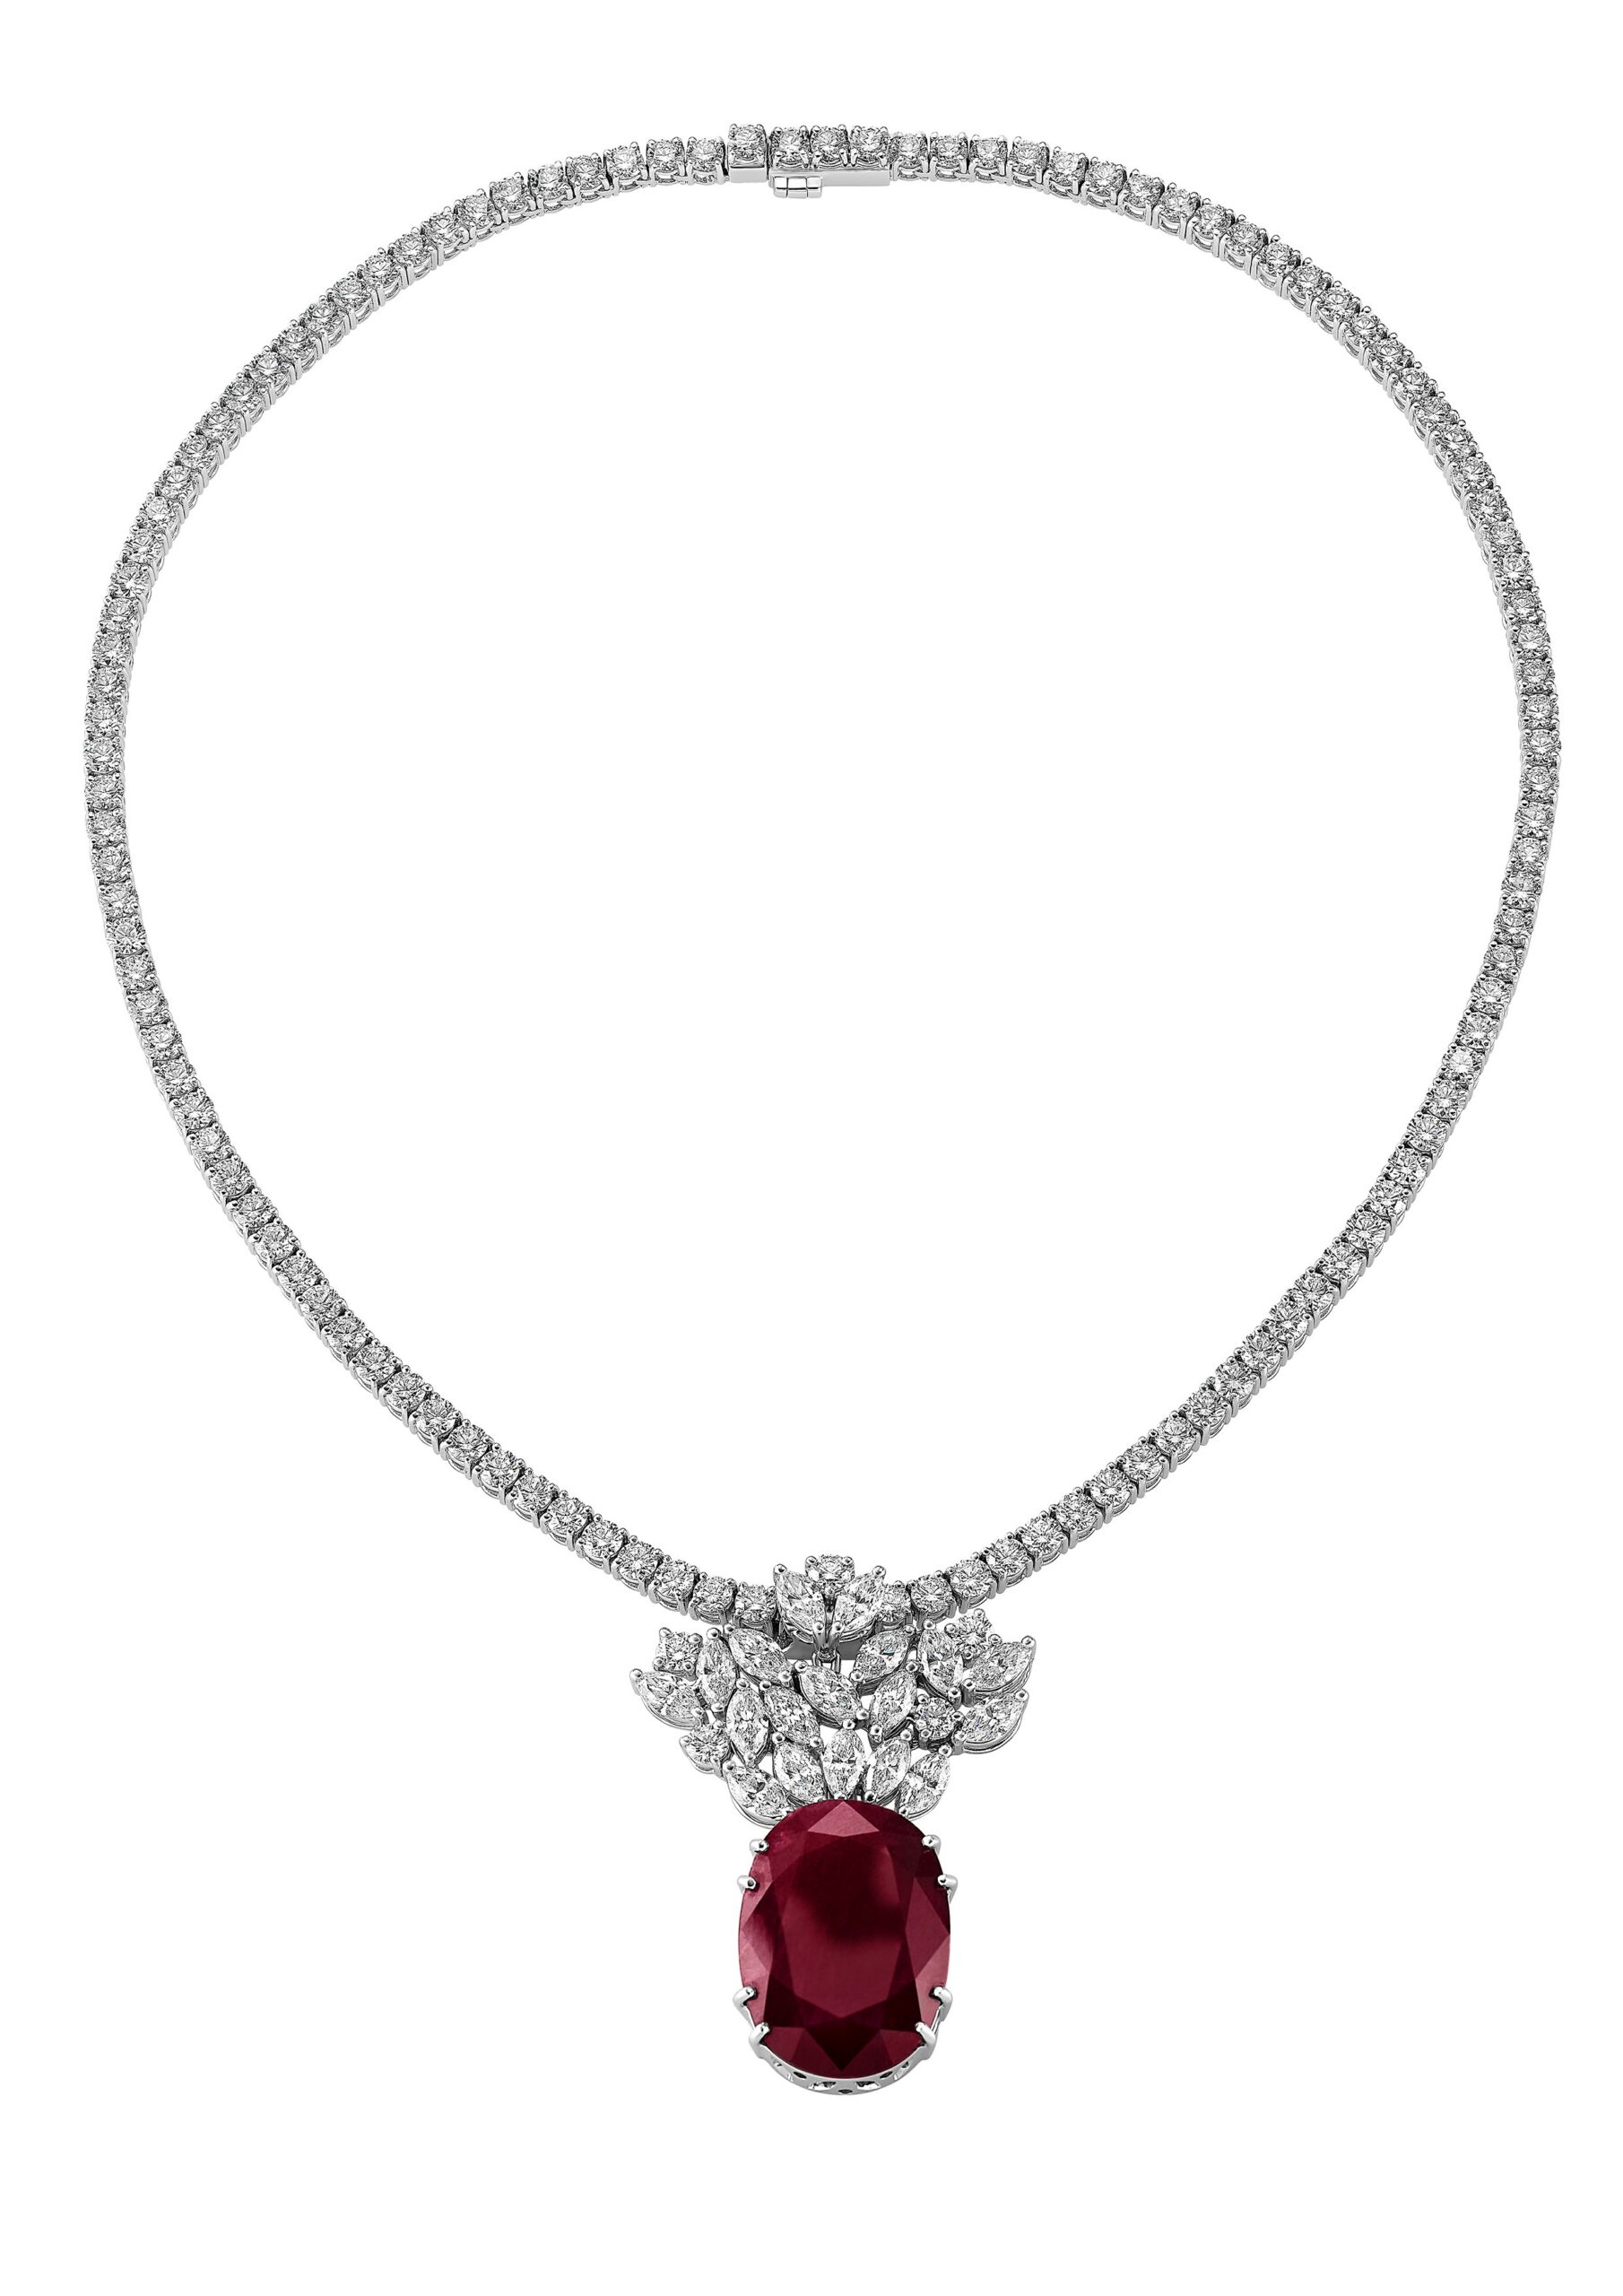 Gioielleria Zampa - Elegance - Ruby and Diamonds Necklace